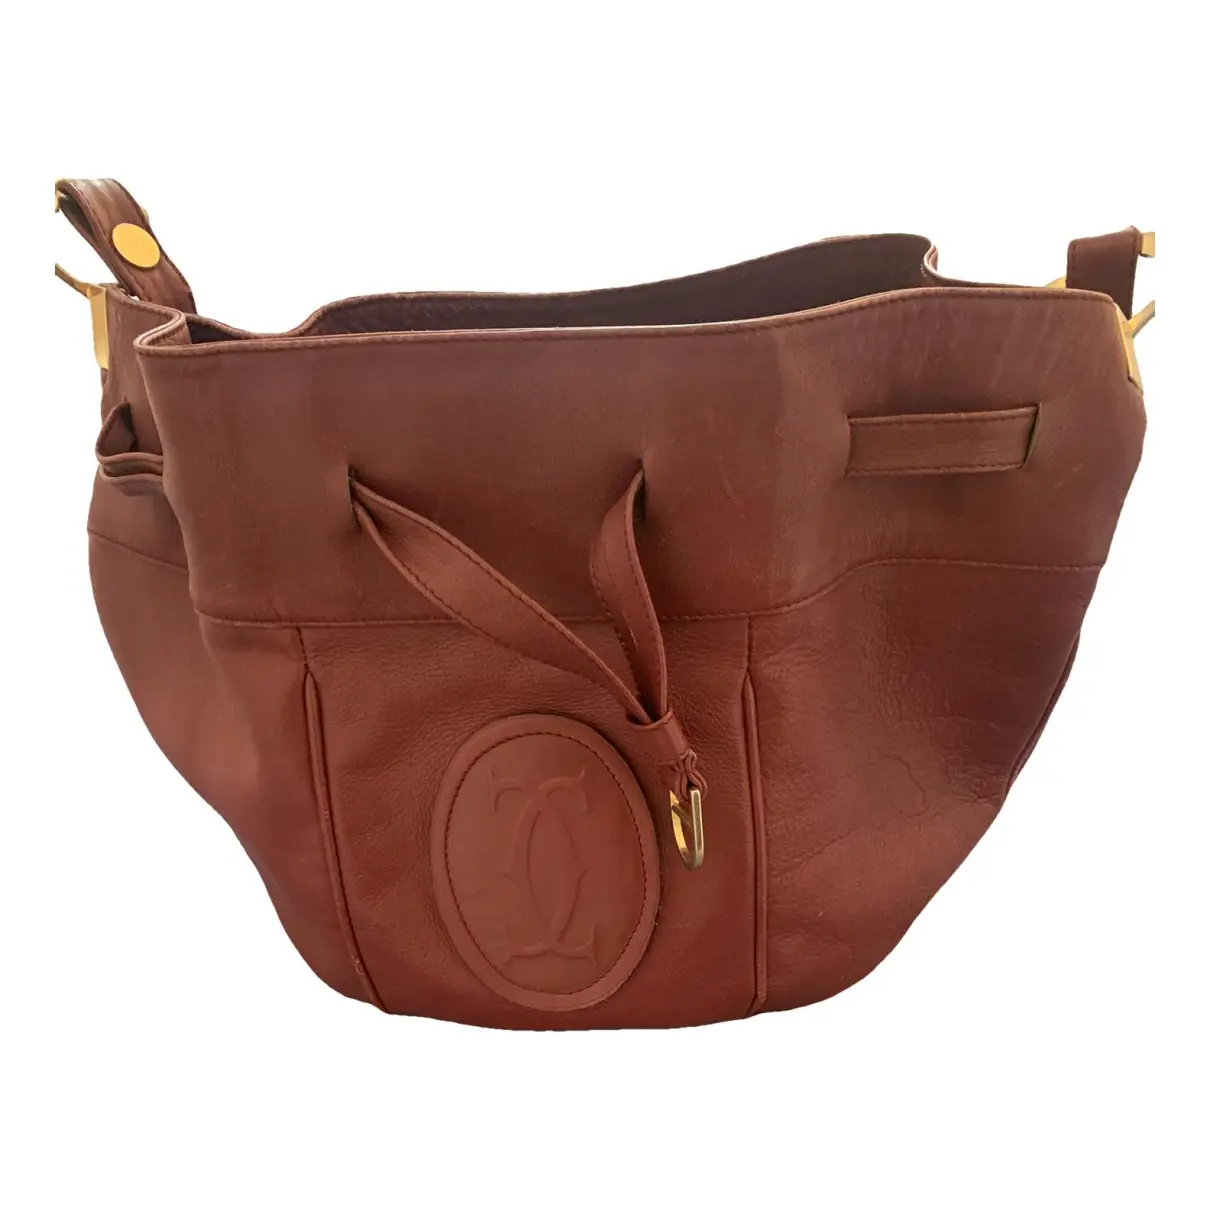 Seau leather crossbody bag